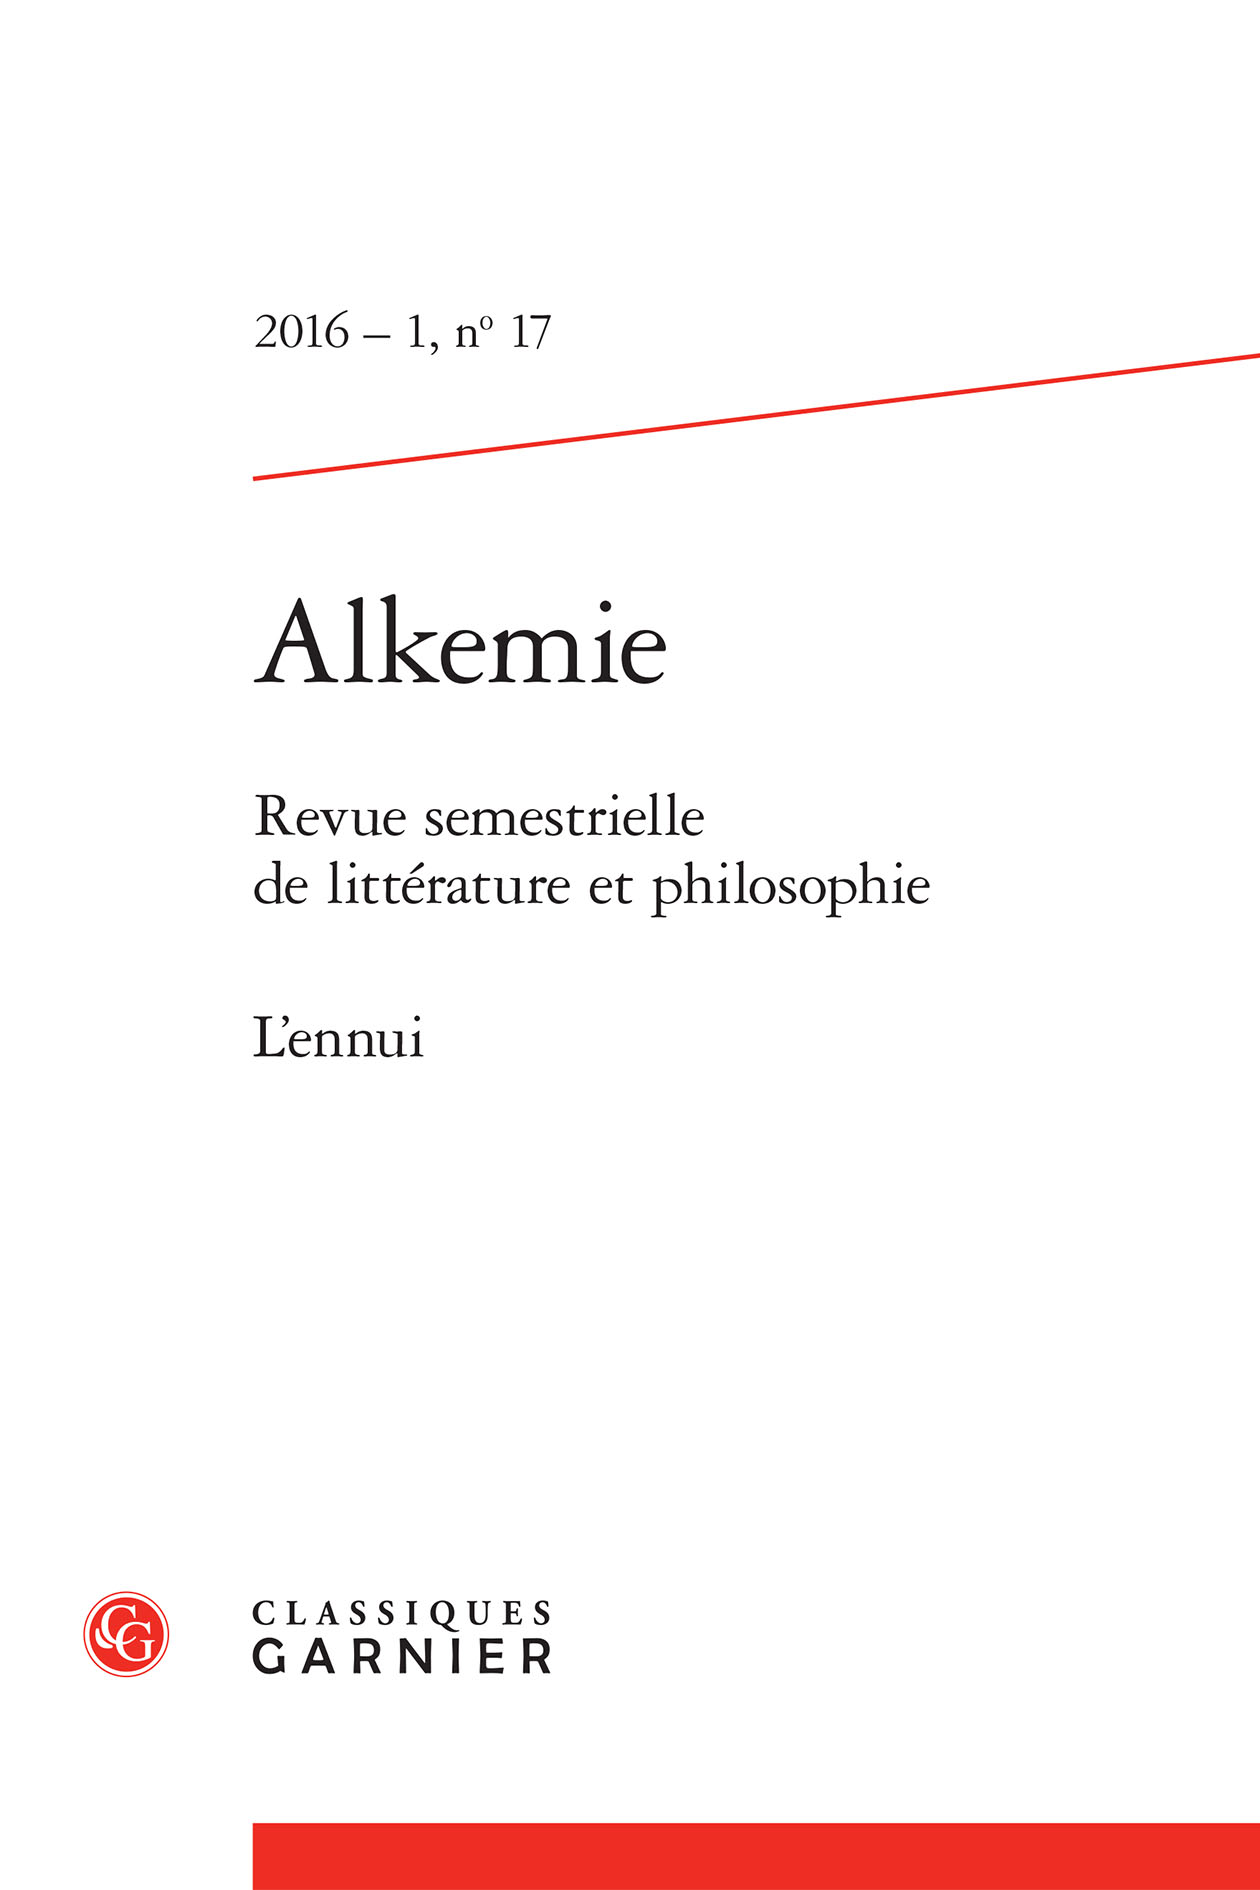 Michel Houellebecq, Soumission, Paris, Flammarion, 2015 (Ger Leppers) Cover Image